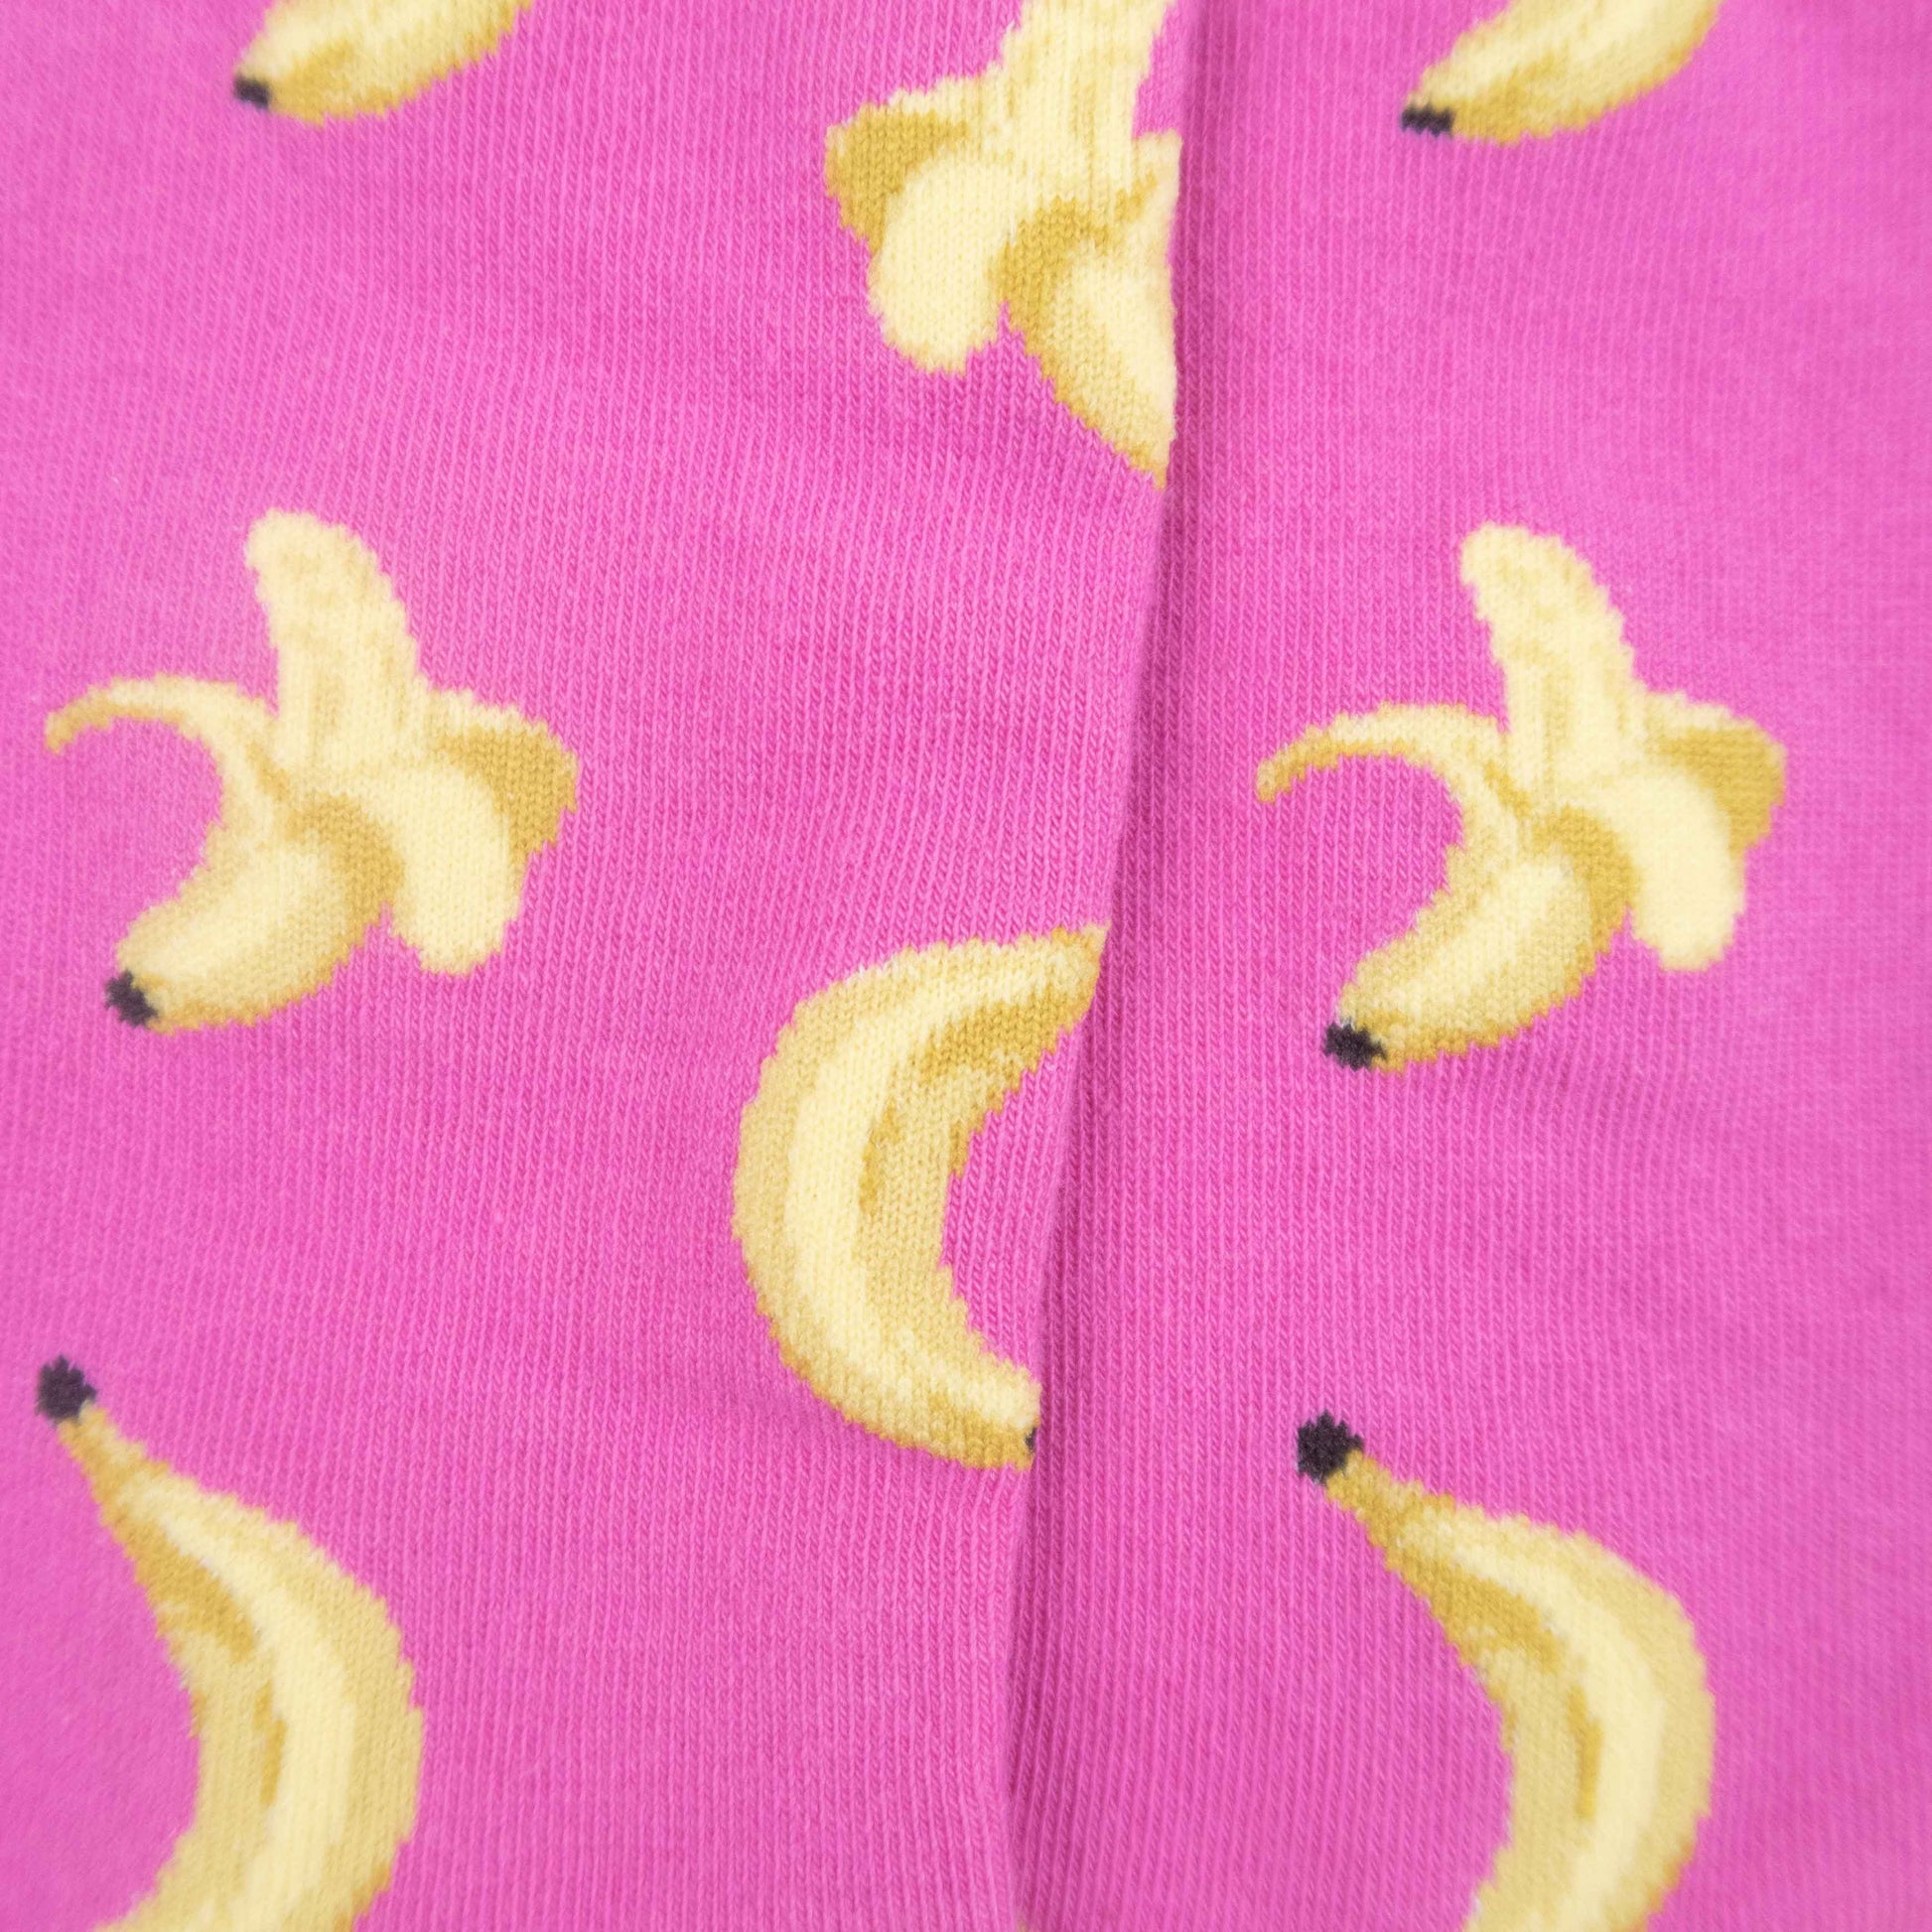 Banana Socks - Imagery Socks